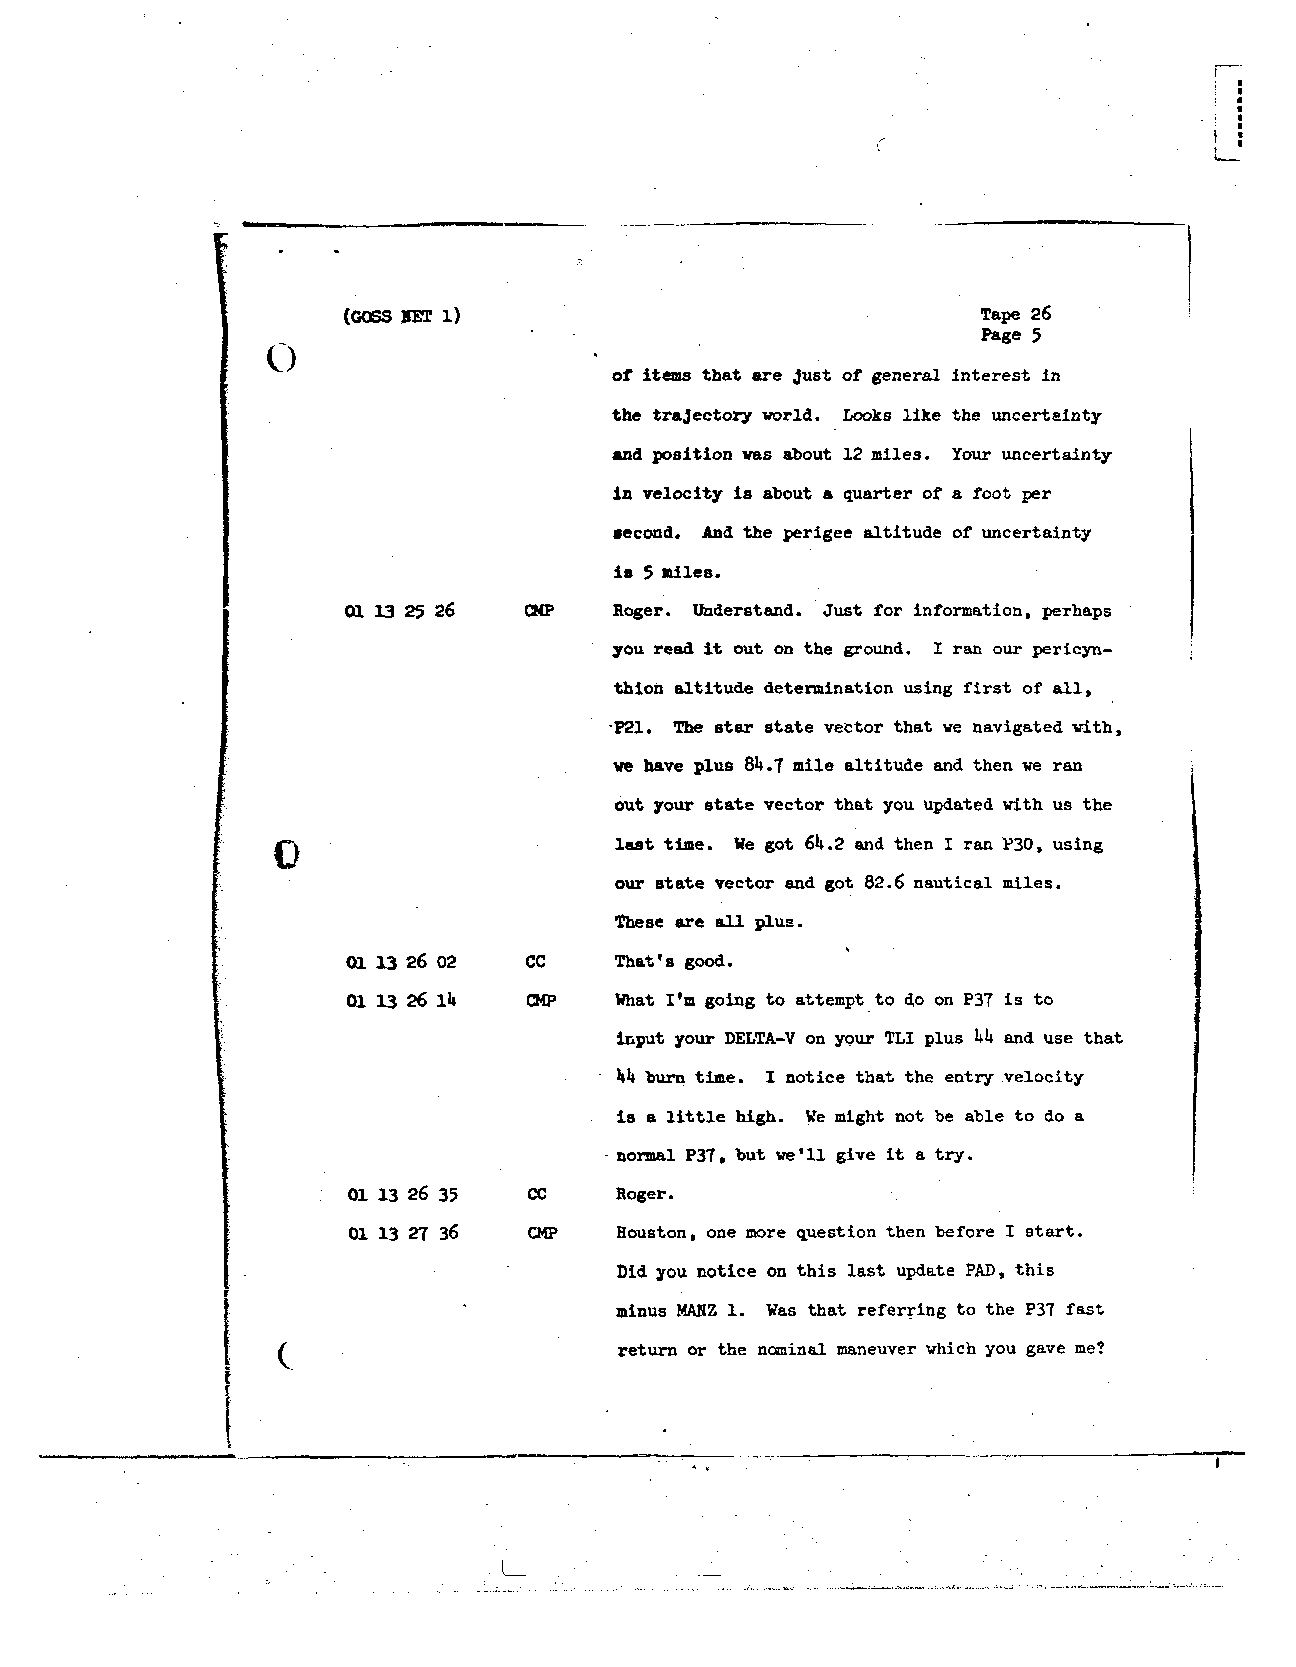 Page 216 of Apollo 8’s original transcript